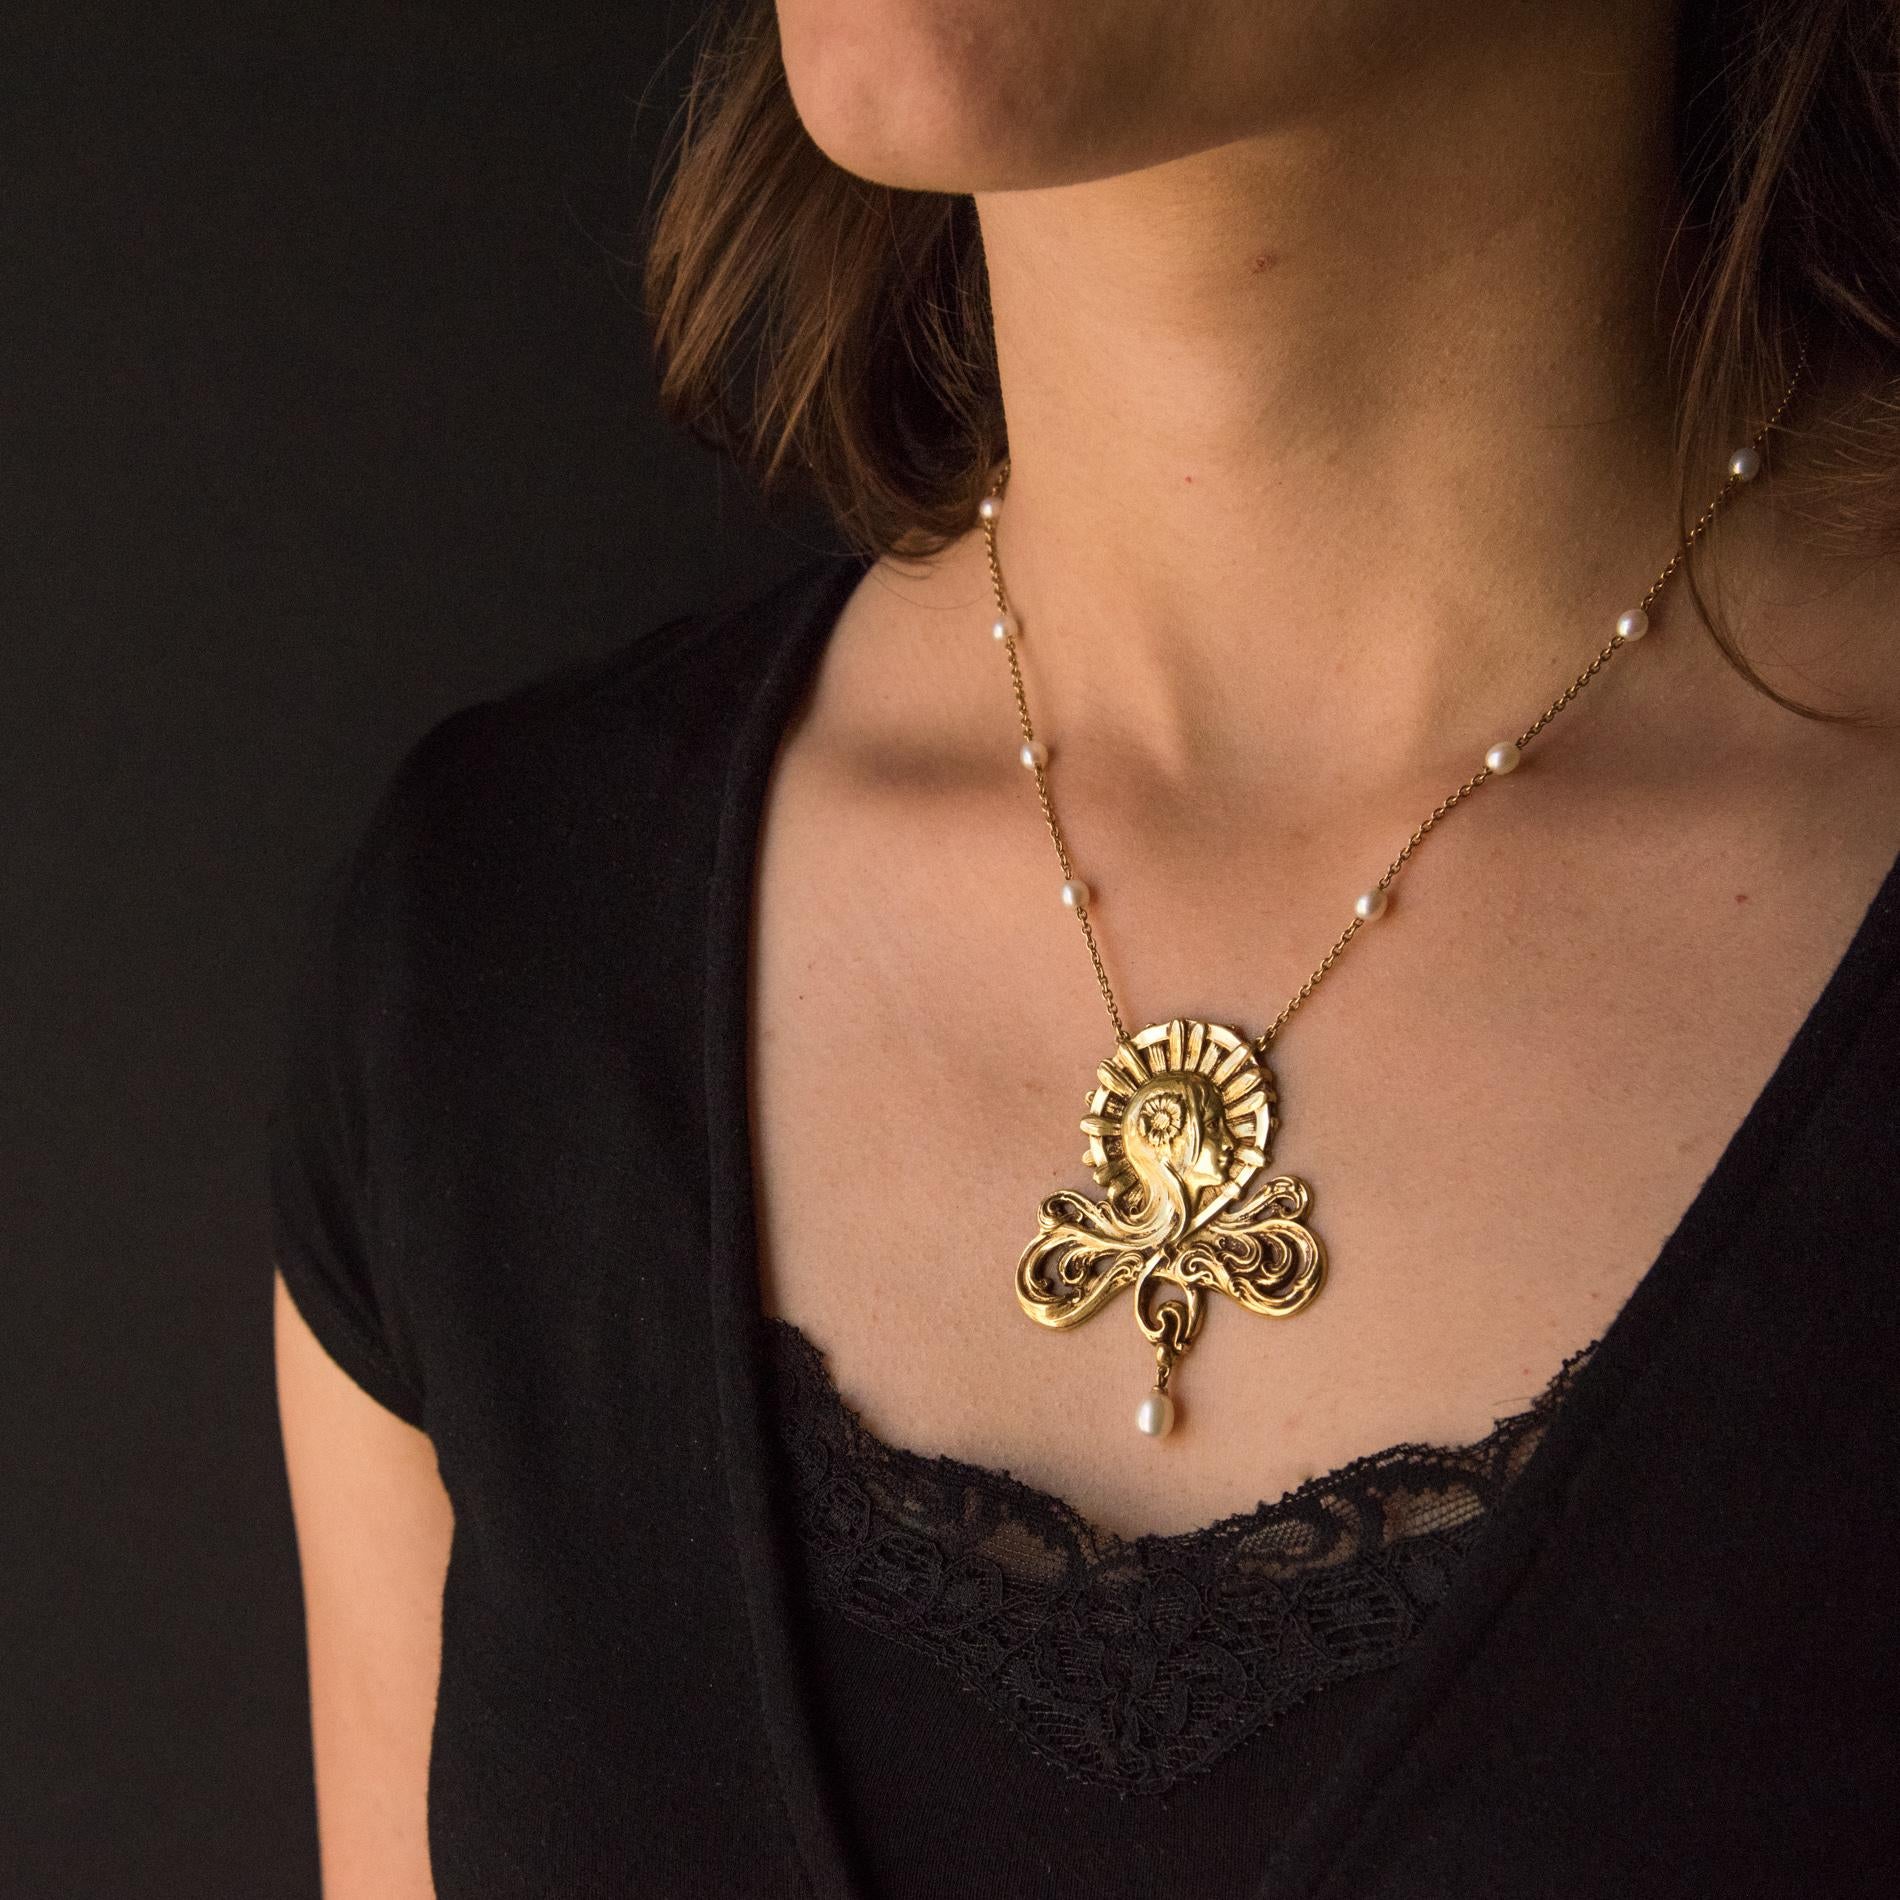 Baume Kreation - Einzigartiges Stück.
Halskette aus 18 Karat Gelbgold, Adlerkopfpunze. 
Sie zeigt den Kopf einer Frau, deren Haare in ein durchbrochenes, darunter eingraviertes Muster übergehen. Sie trägt eine goldene Blume in ihrem Haar.